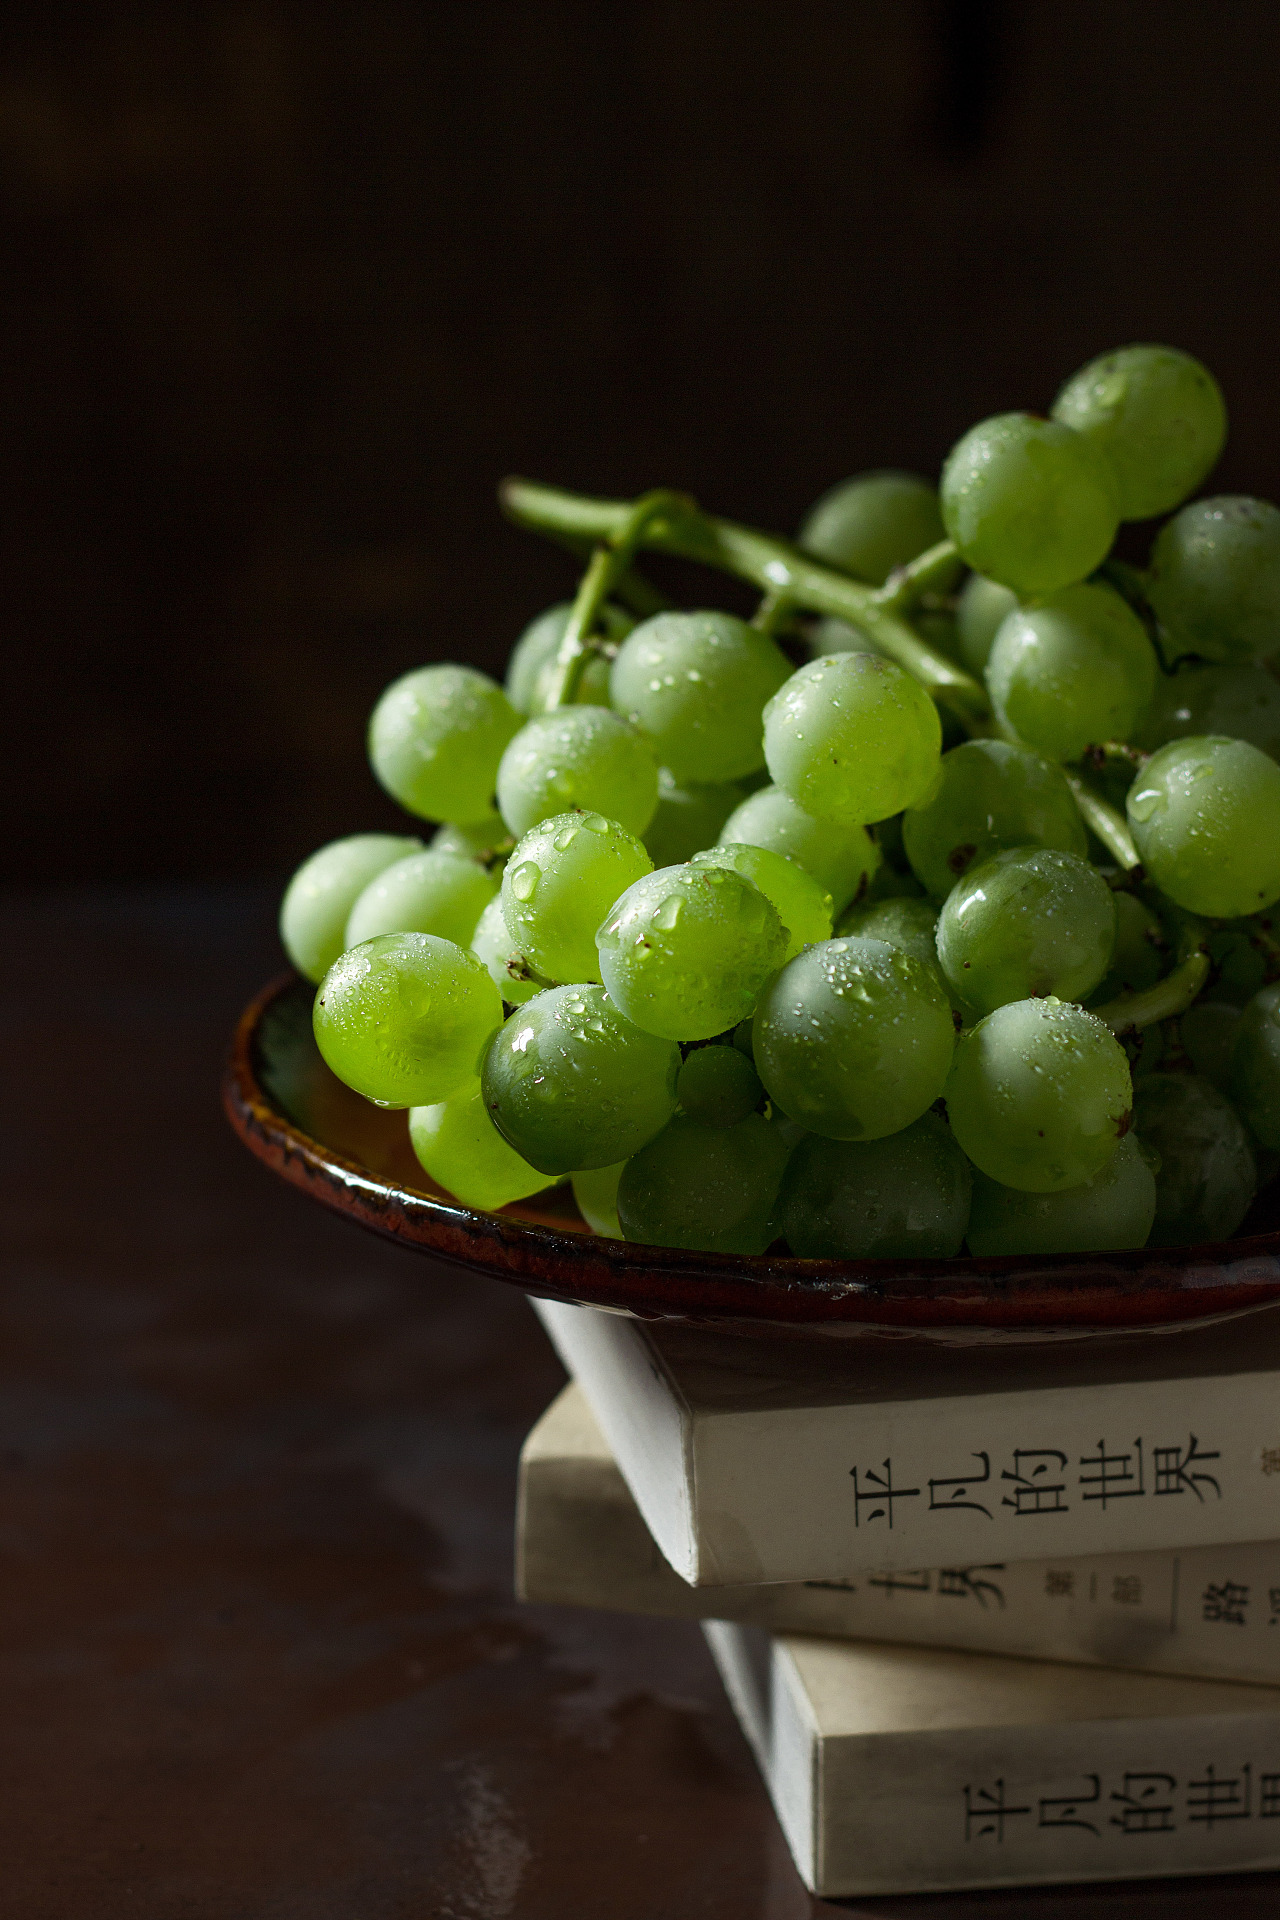 葡萄生长所需的营养元素及功能